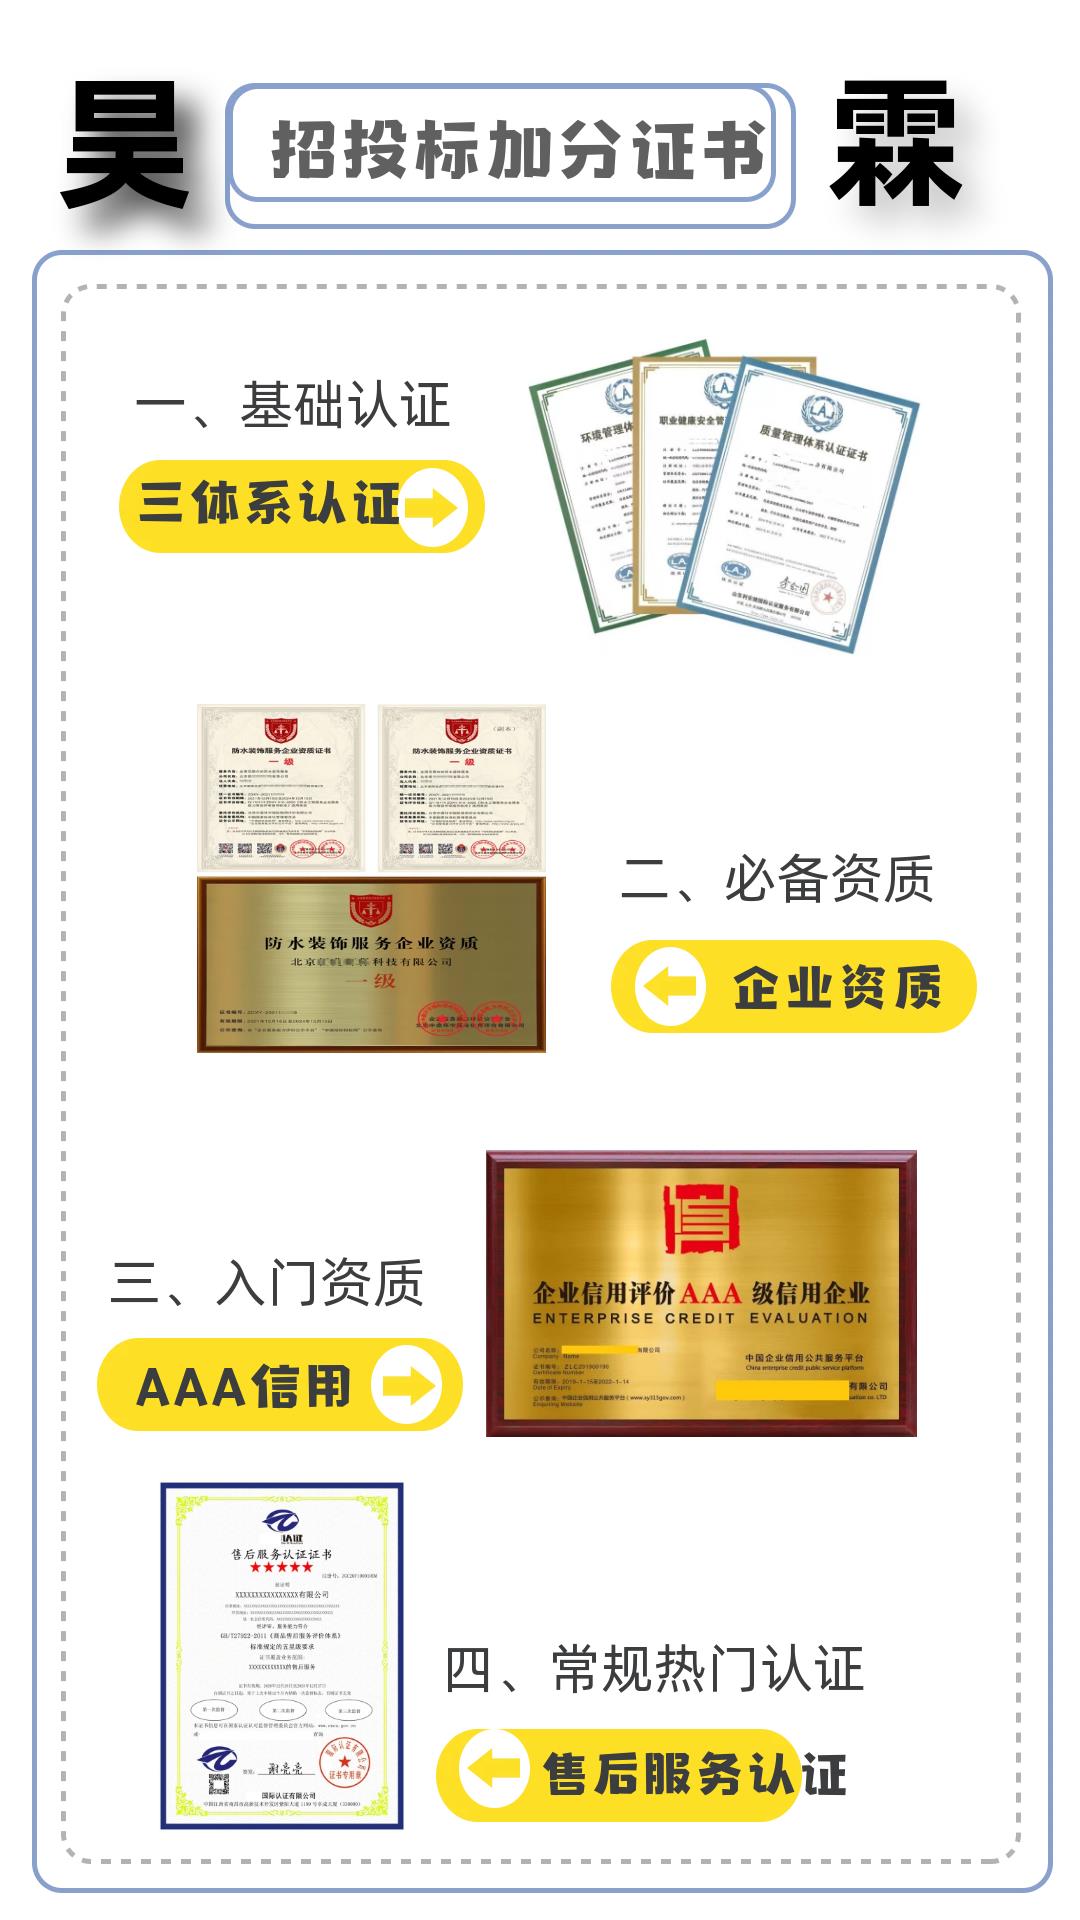 广西生鲜食品配送管理体系认证